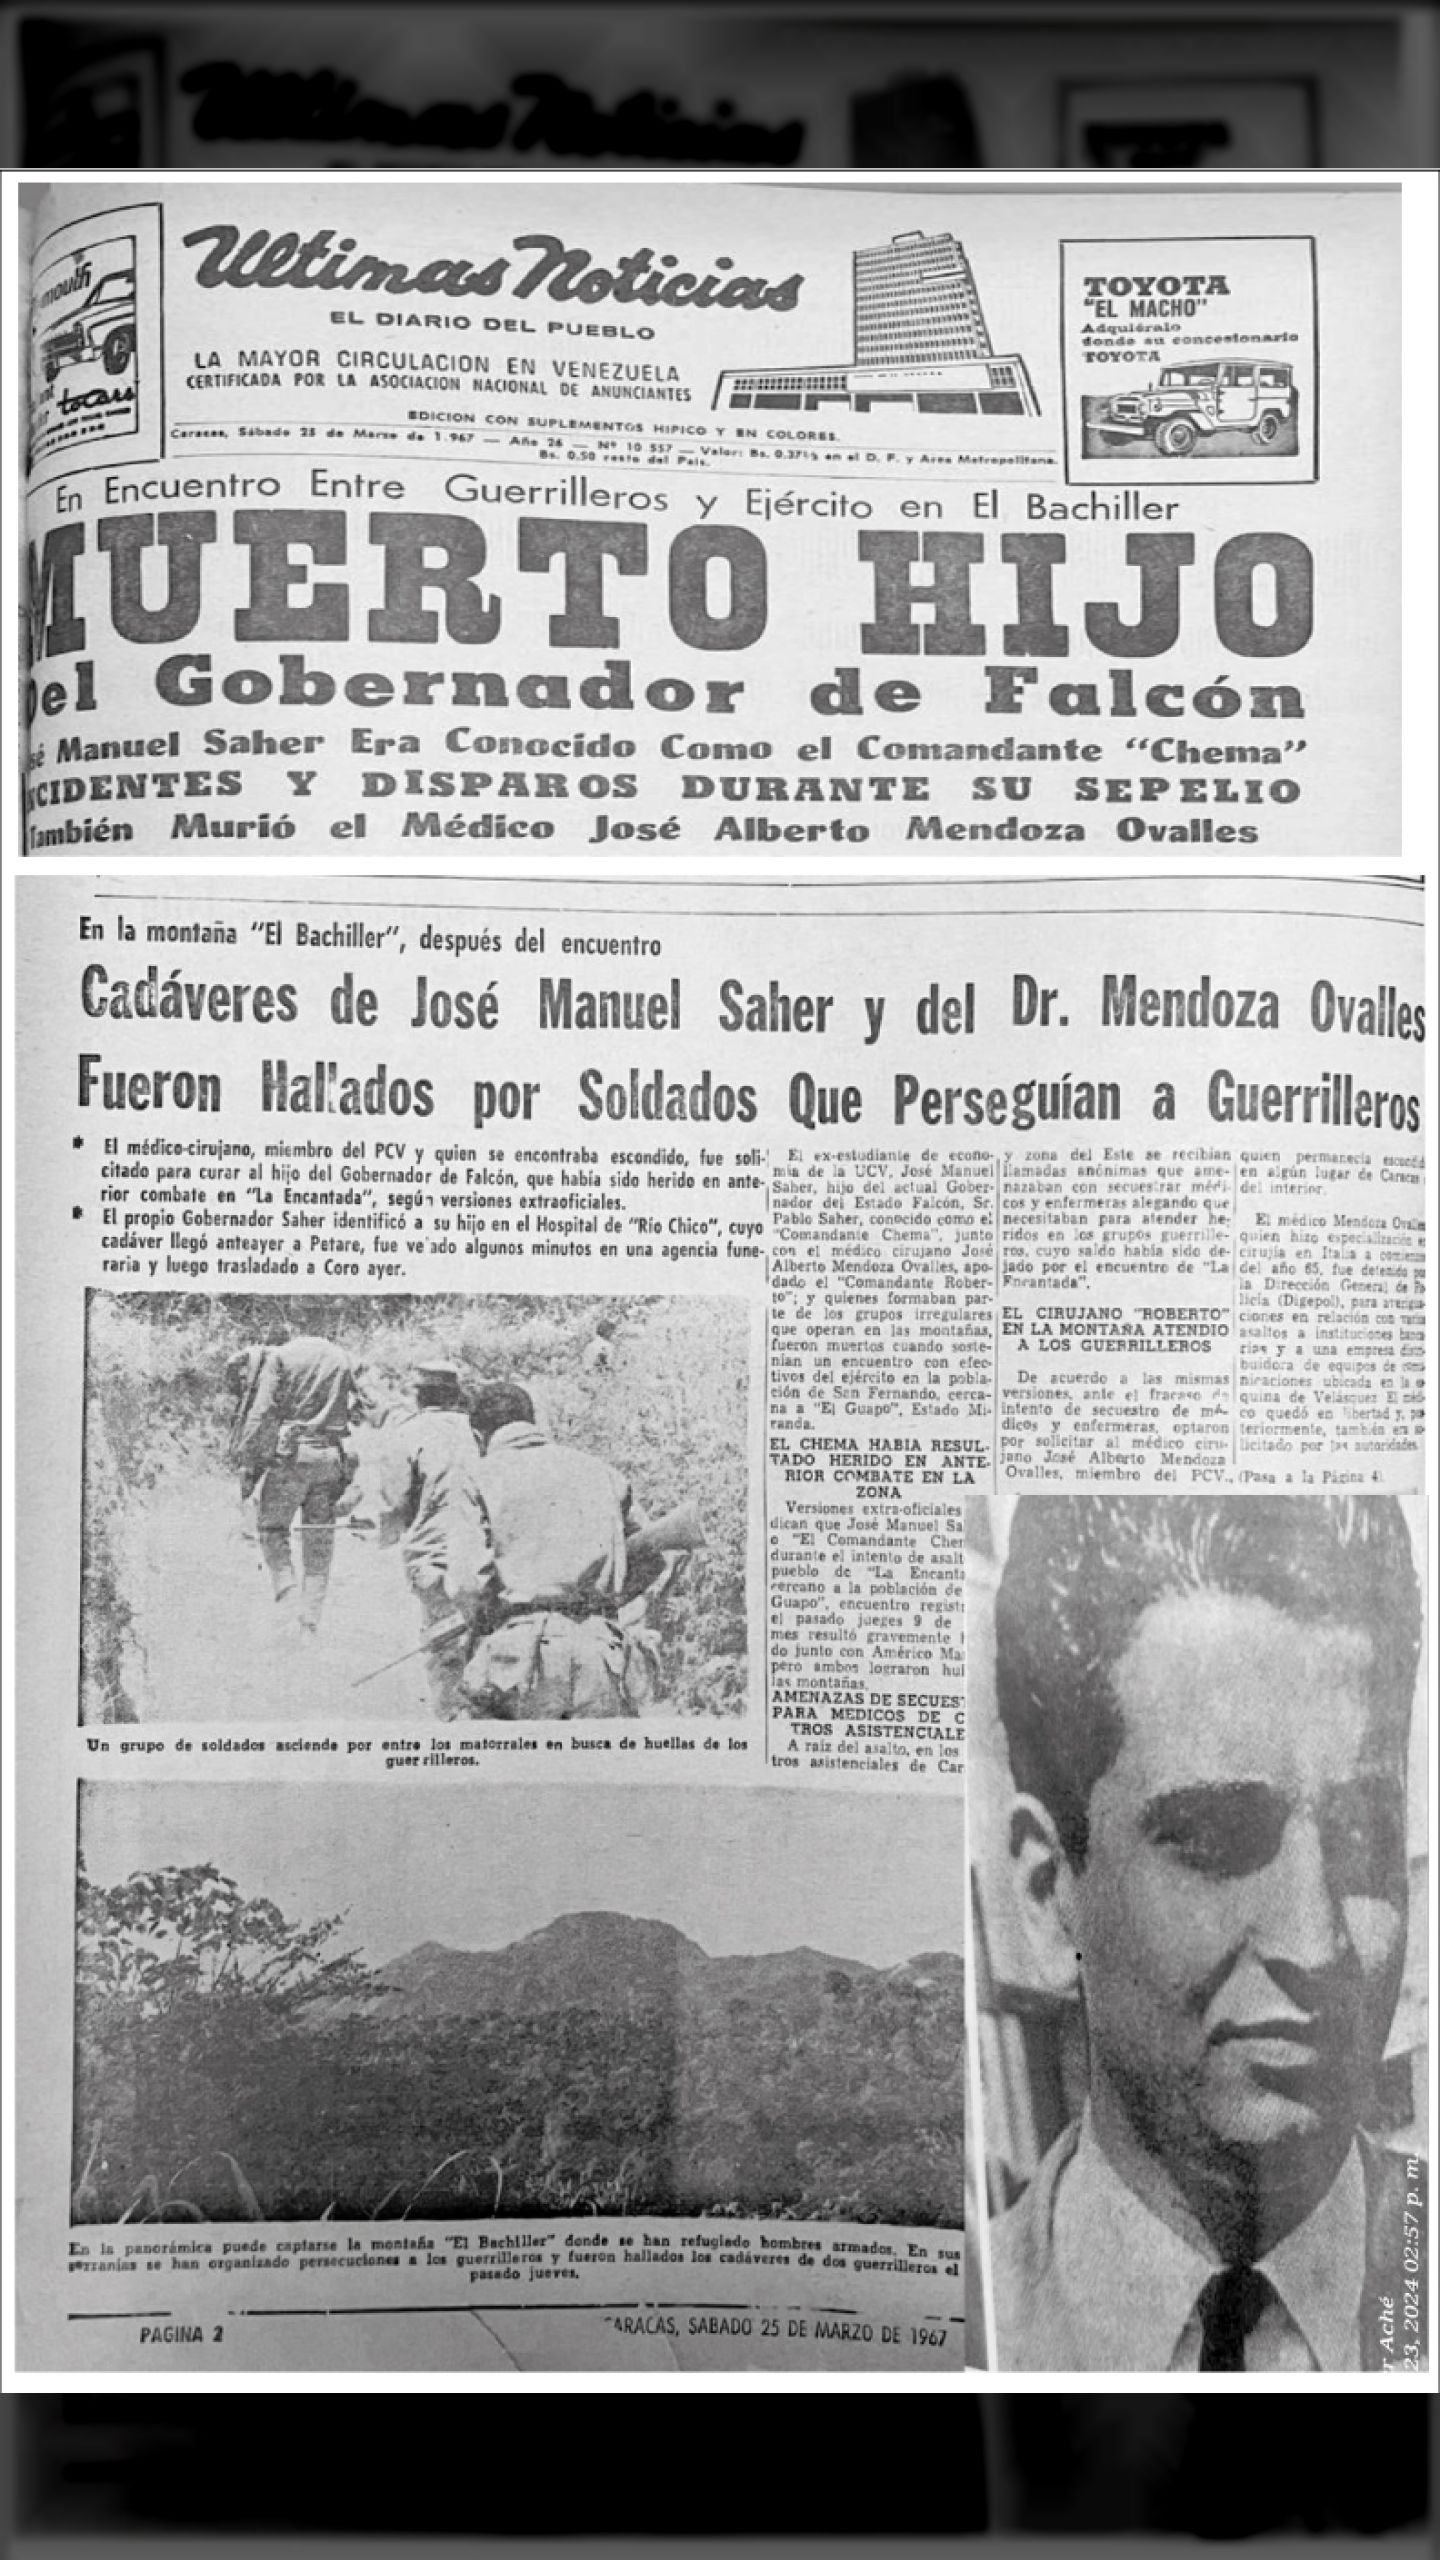 SON FUSILADOS JOSÉ MANUEL “CHEMA” SAHER Y JOSÉ ALBERTO OVALLES (ÚLTIMAS NOTICIAS, 25 de marzo 1967)